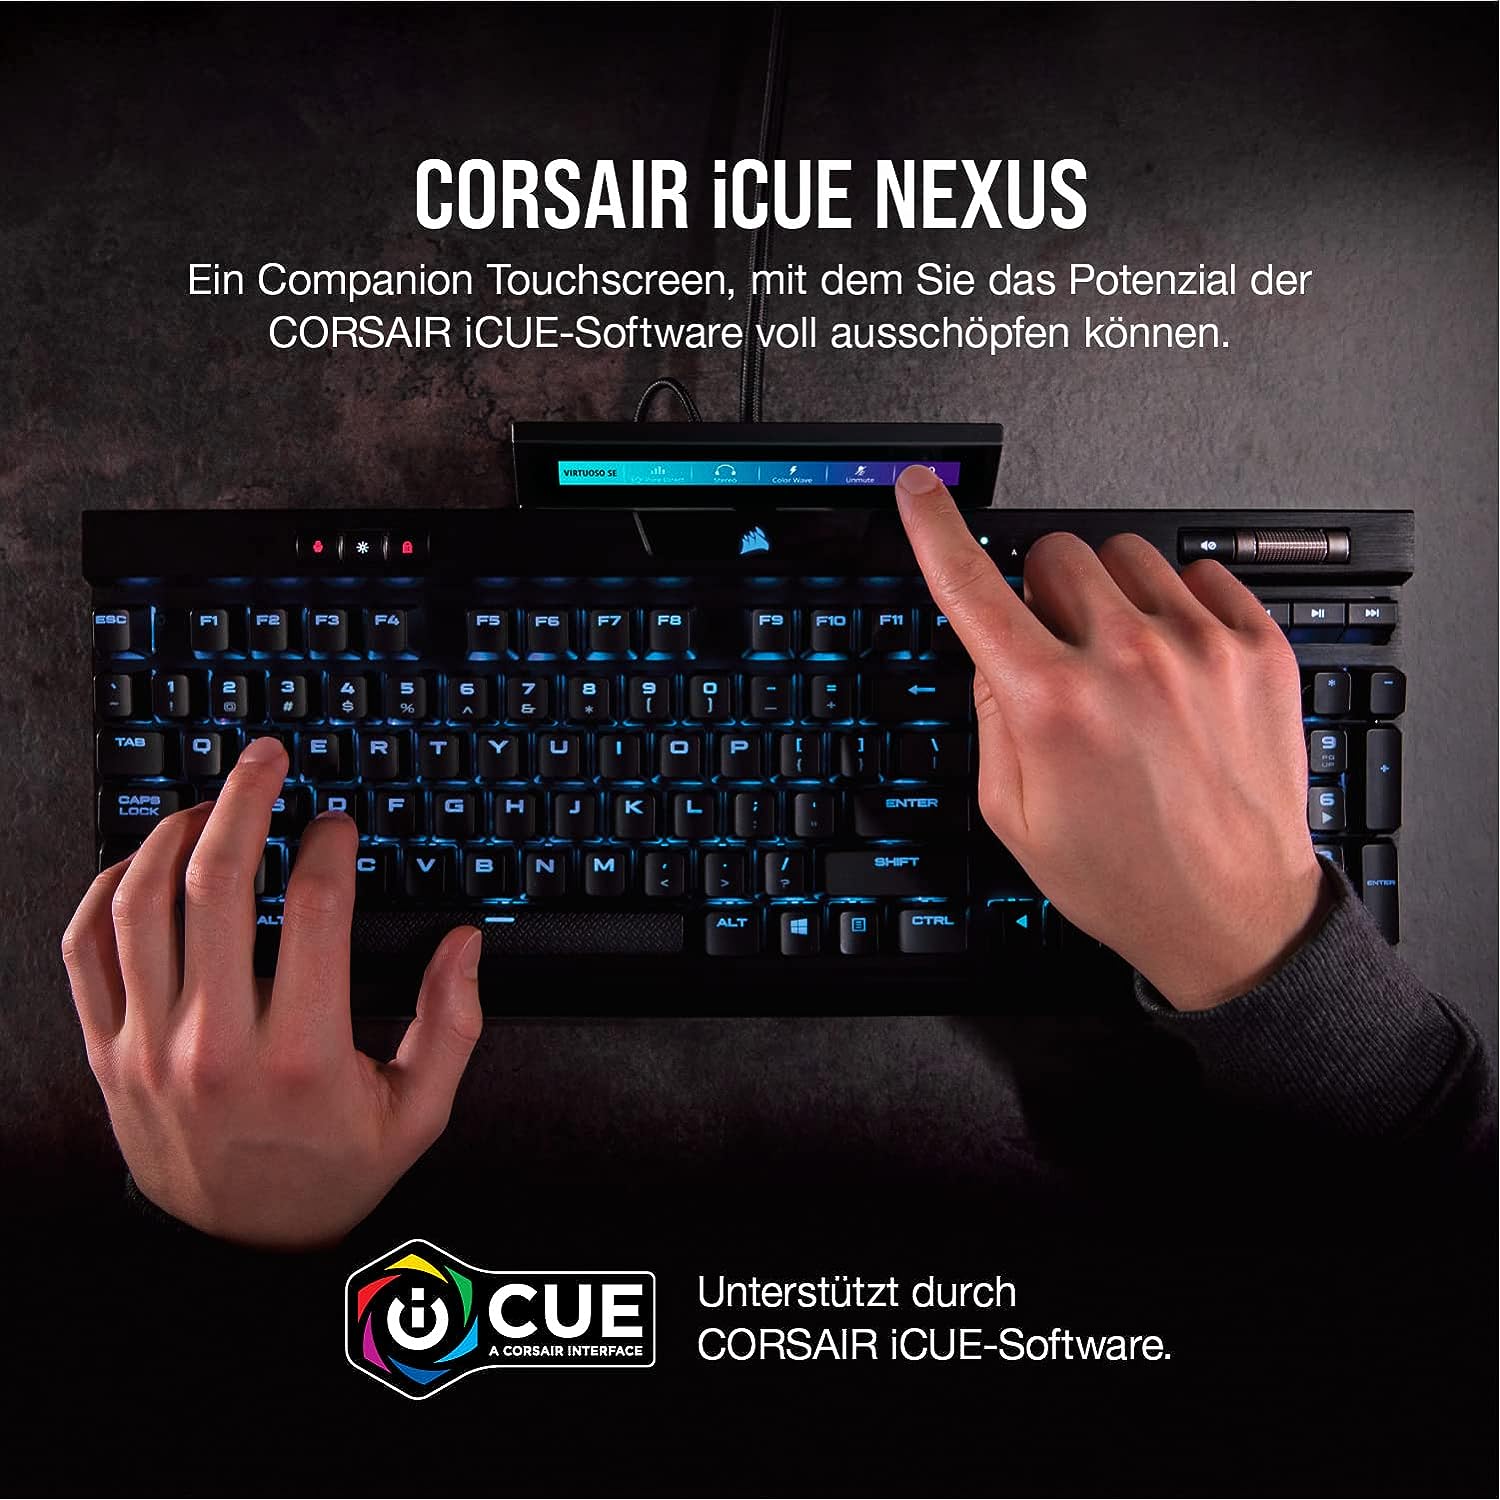 Corsair iCUE NEXUS Companion Touchscreen review